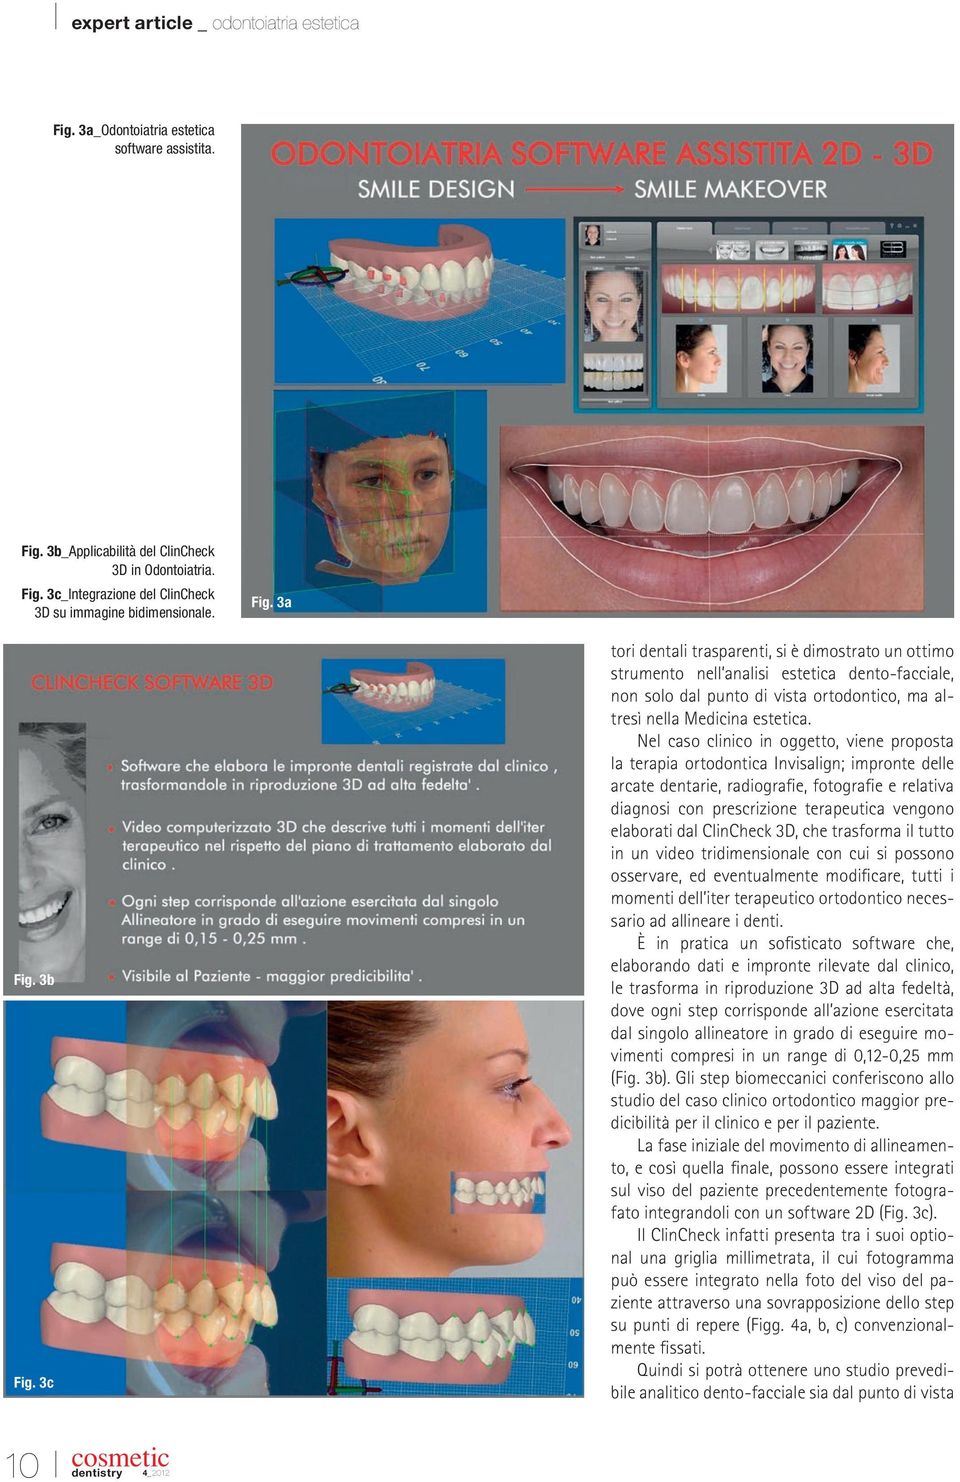 Nel caso clinico in oggetto, viene proposta la terapia ortodontica Invisalign; impronte delle arcate dentarie, radiografie, fotografie e relativa diagnosi con prescrizione terapeutica vengono